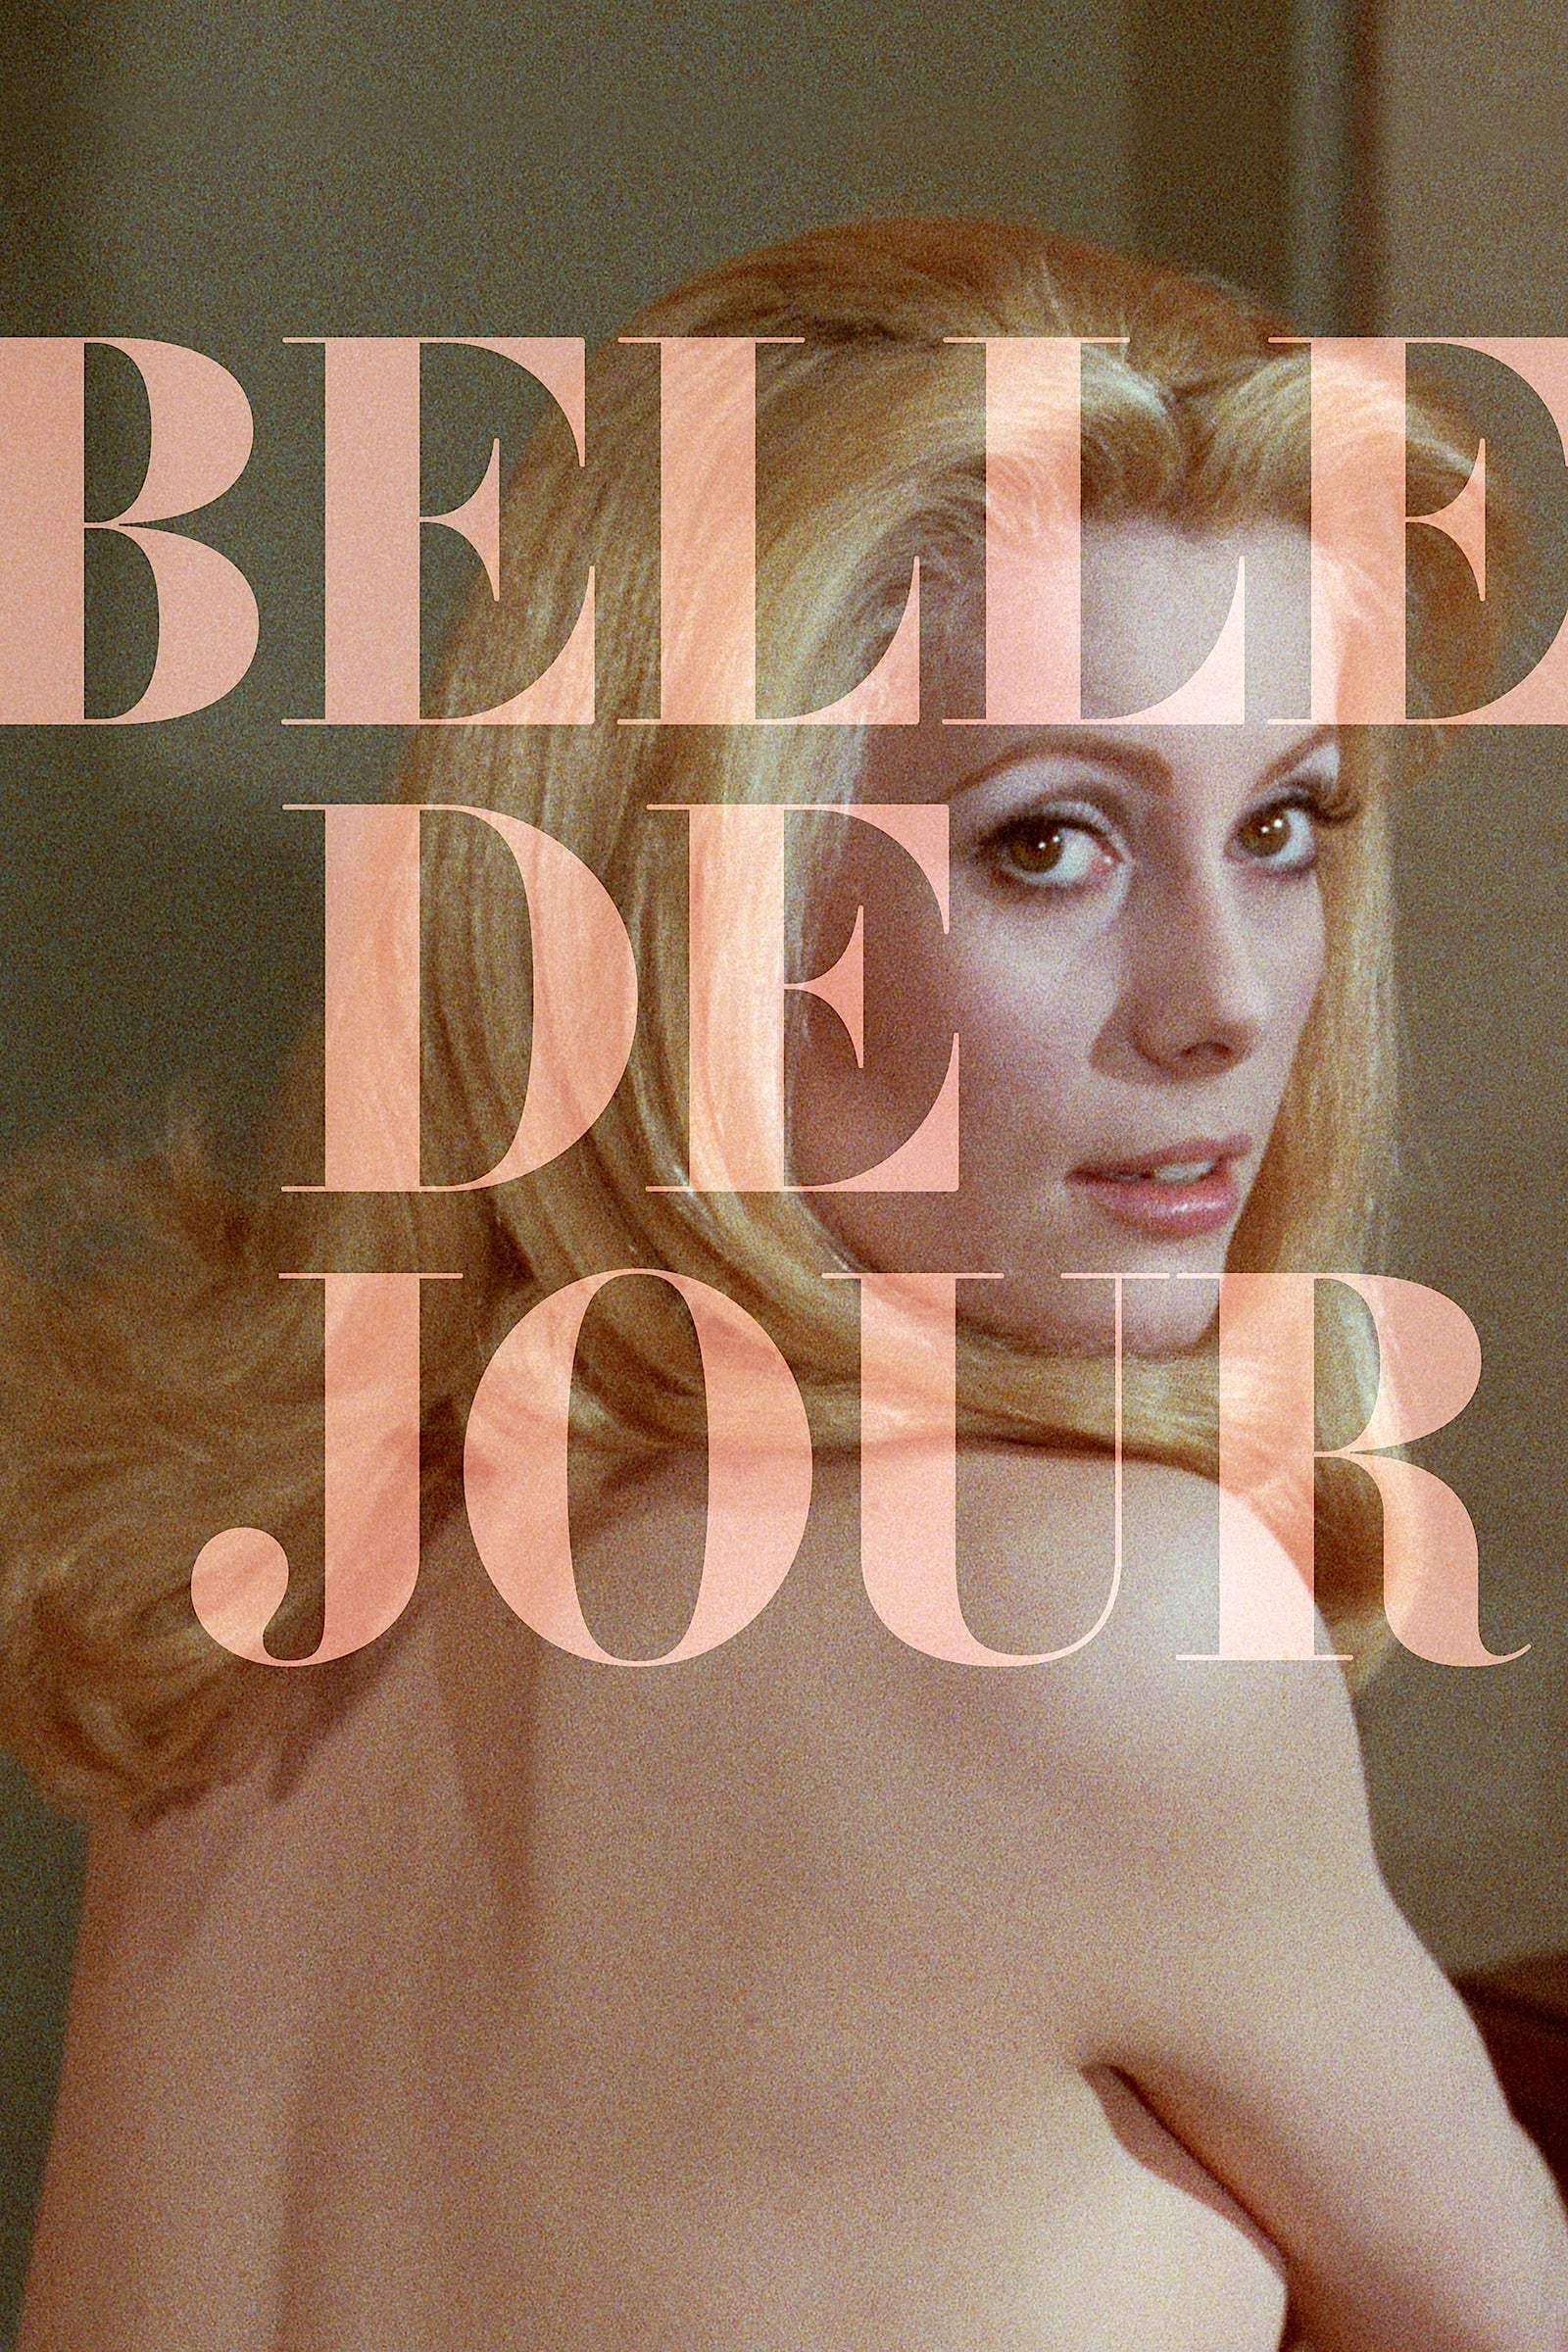 Belle de jour - Schöne des Tages (1967)